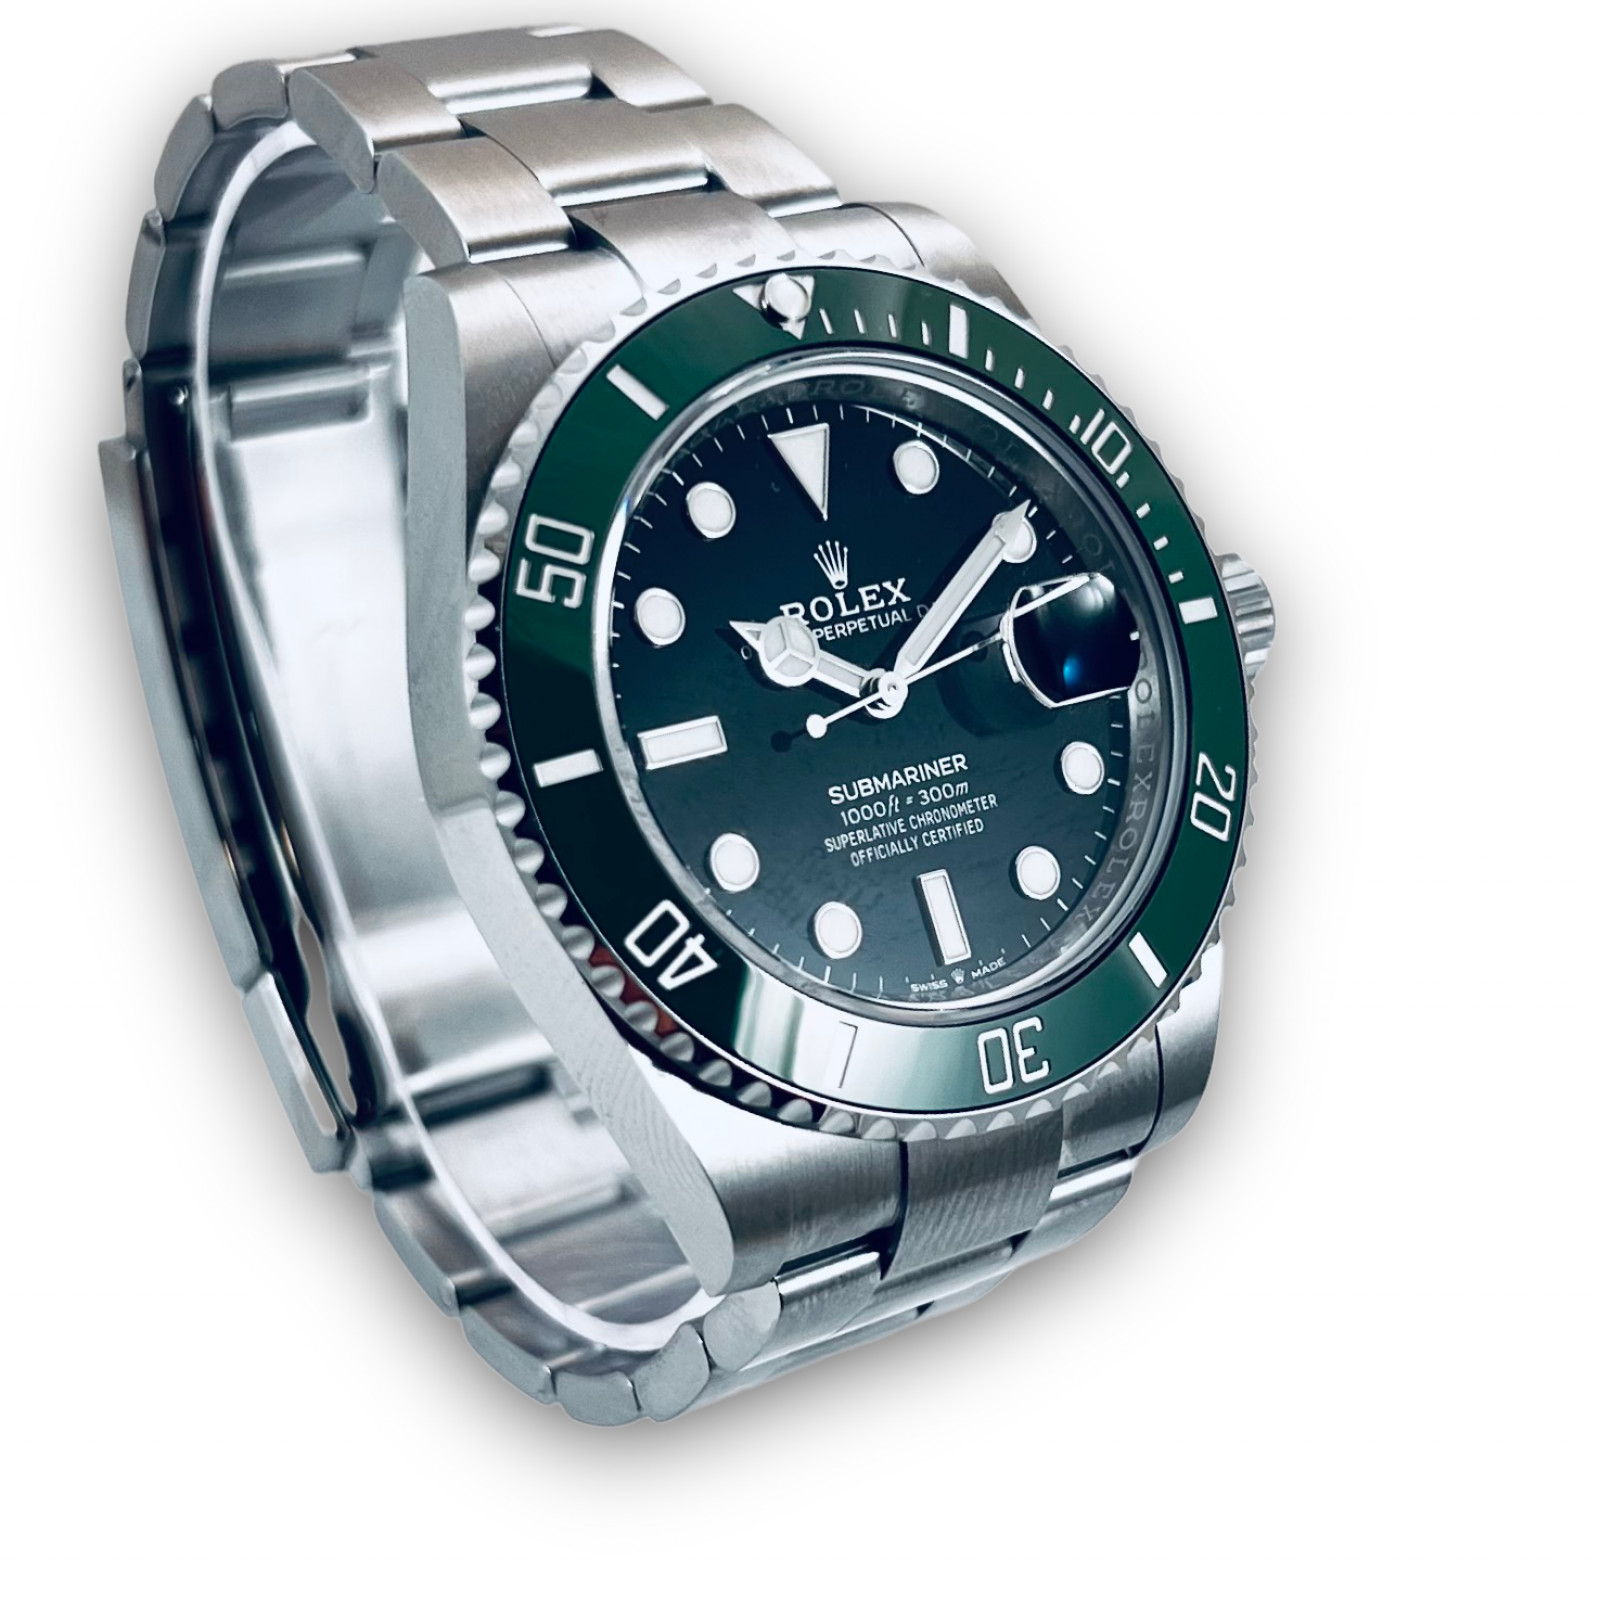 Rolex Submariner Green Kermit Cerachrom Mens Watch 126610LV Unworn